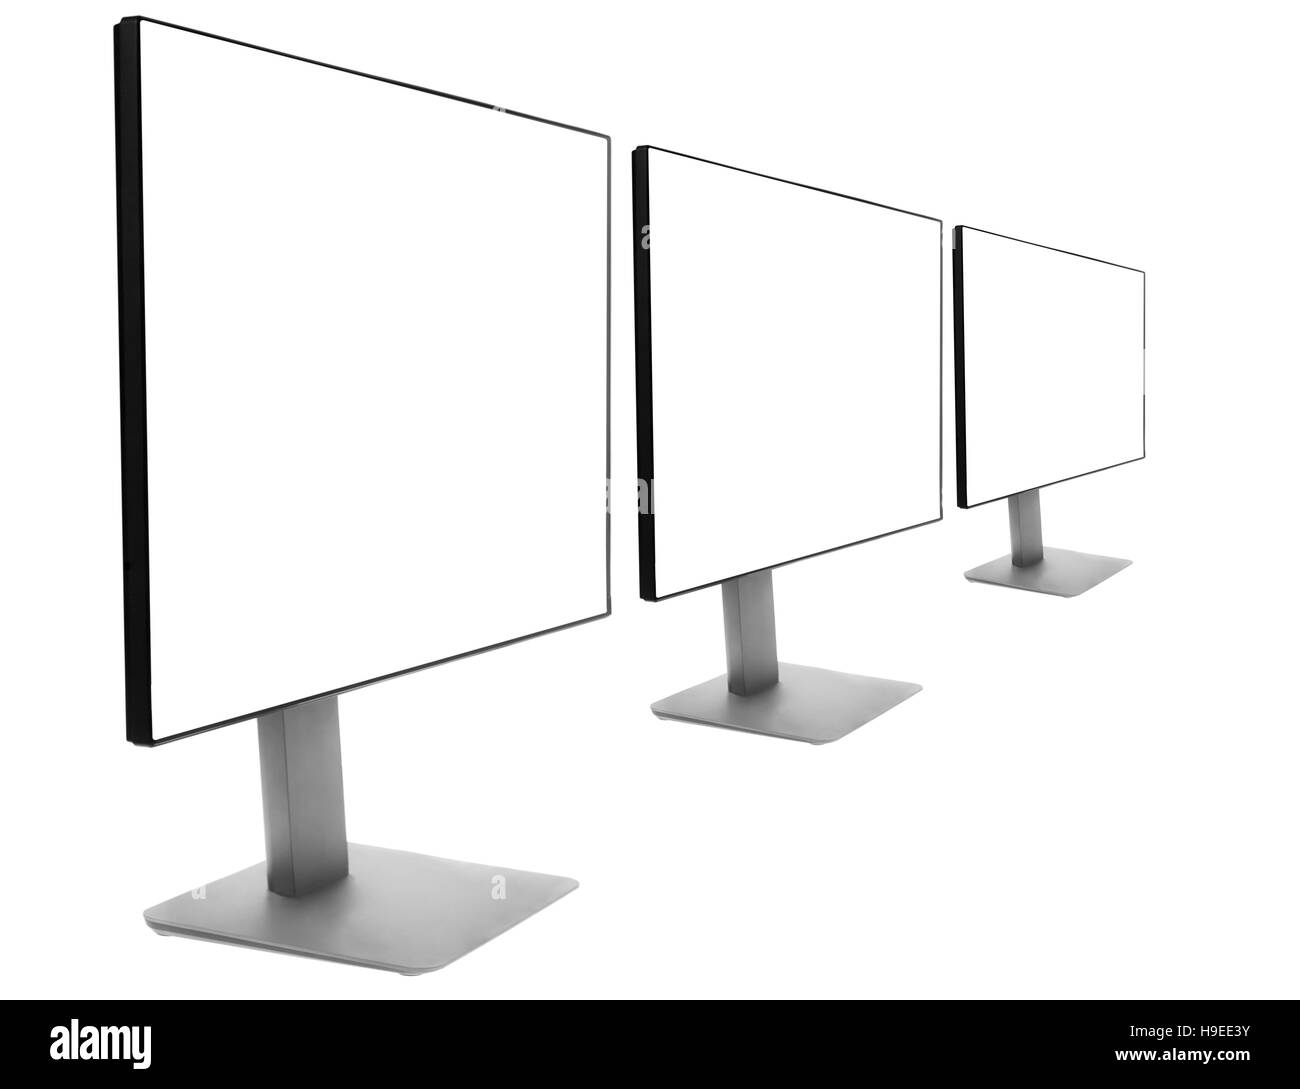 Three monitors in a row Stock Photo